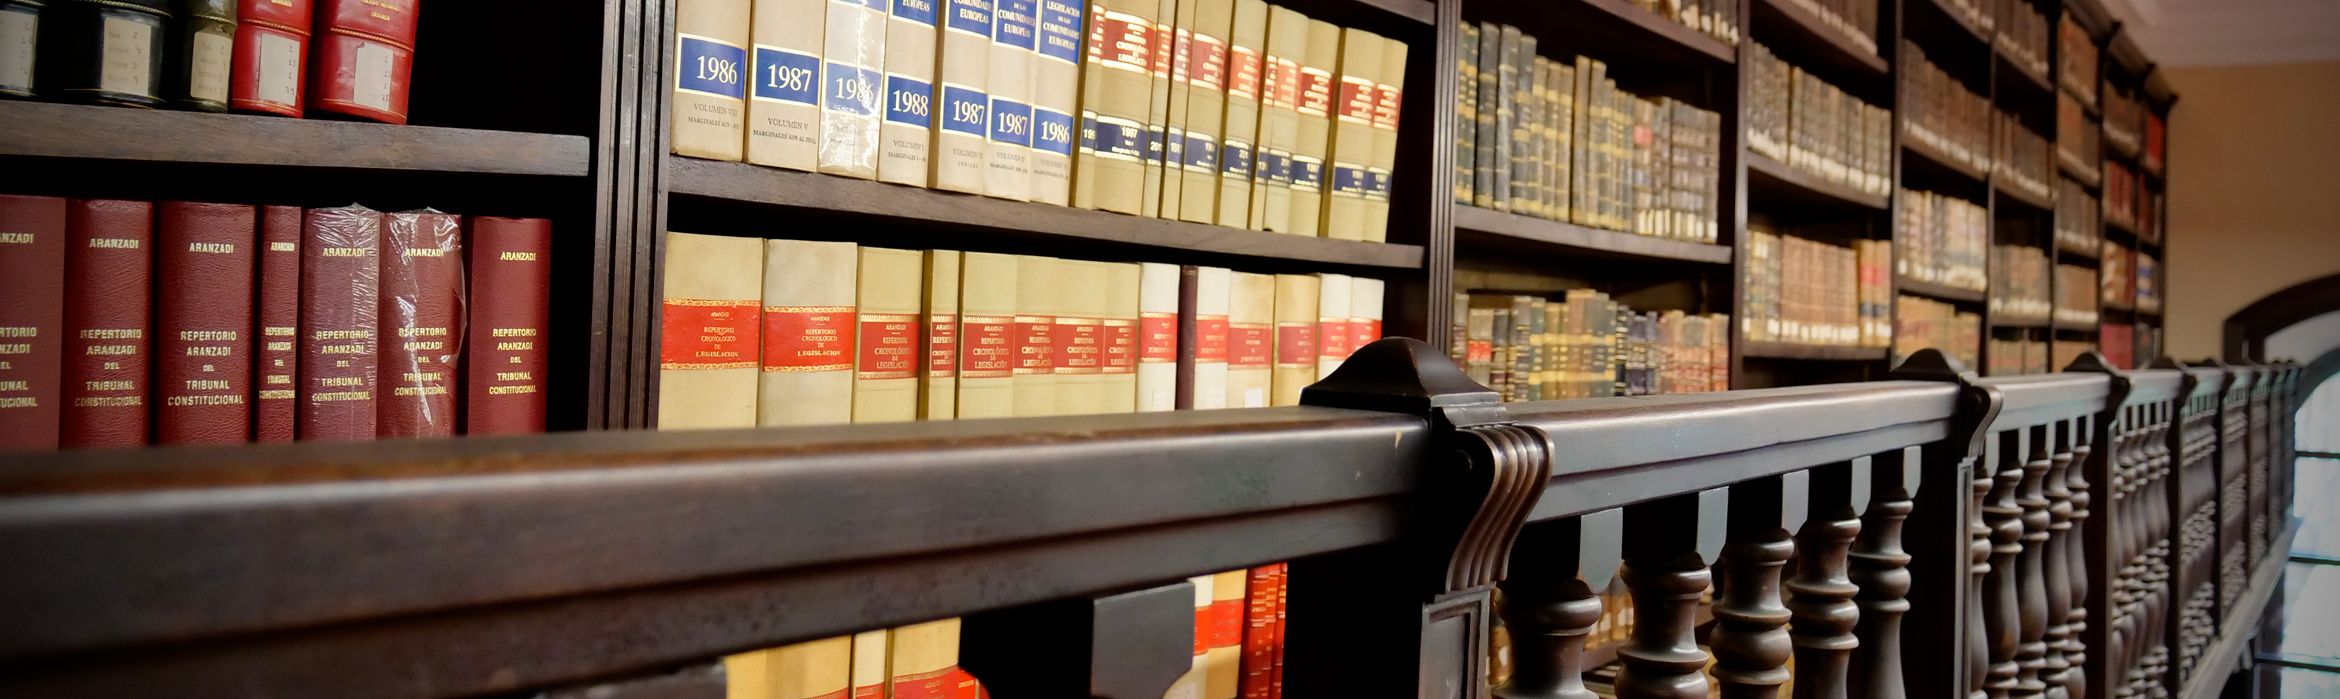 Estanterías llenas de libros en el segundo nivel de la biblioteca de la Facultad de Derecho